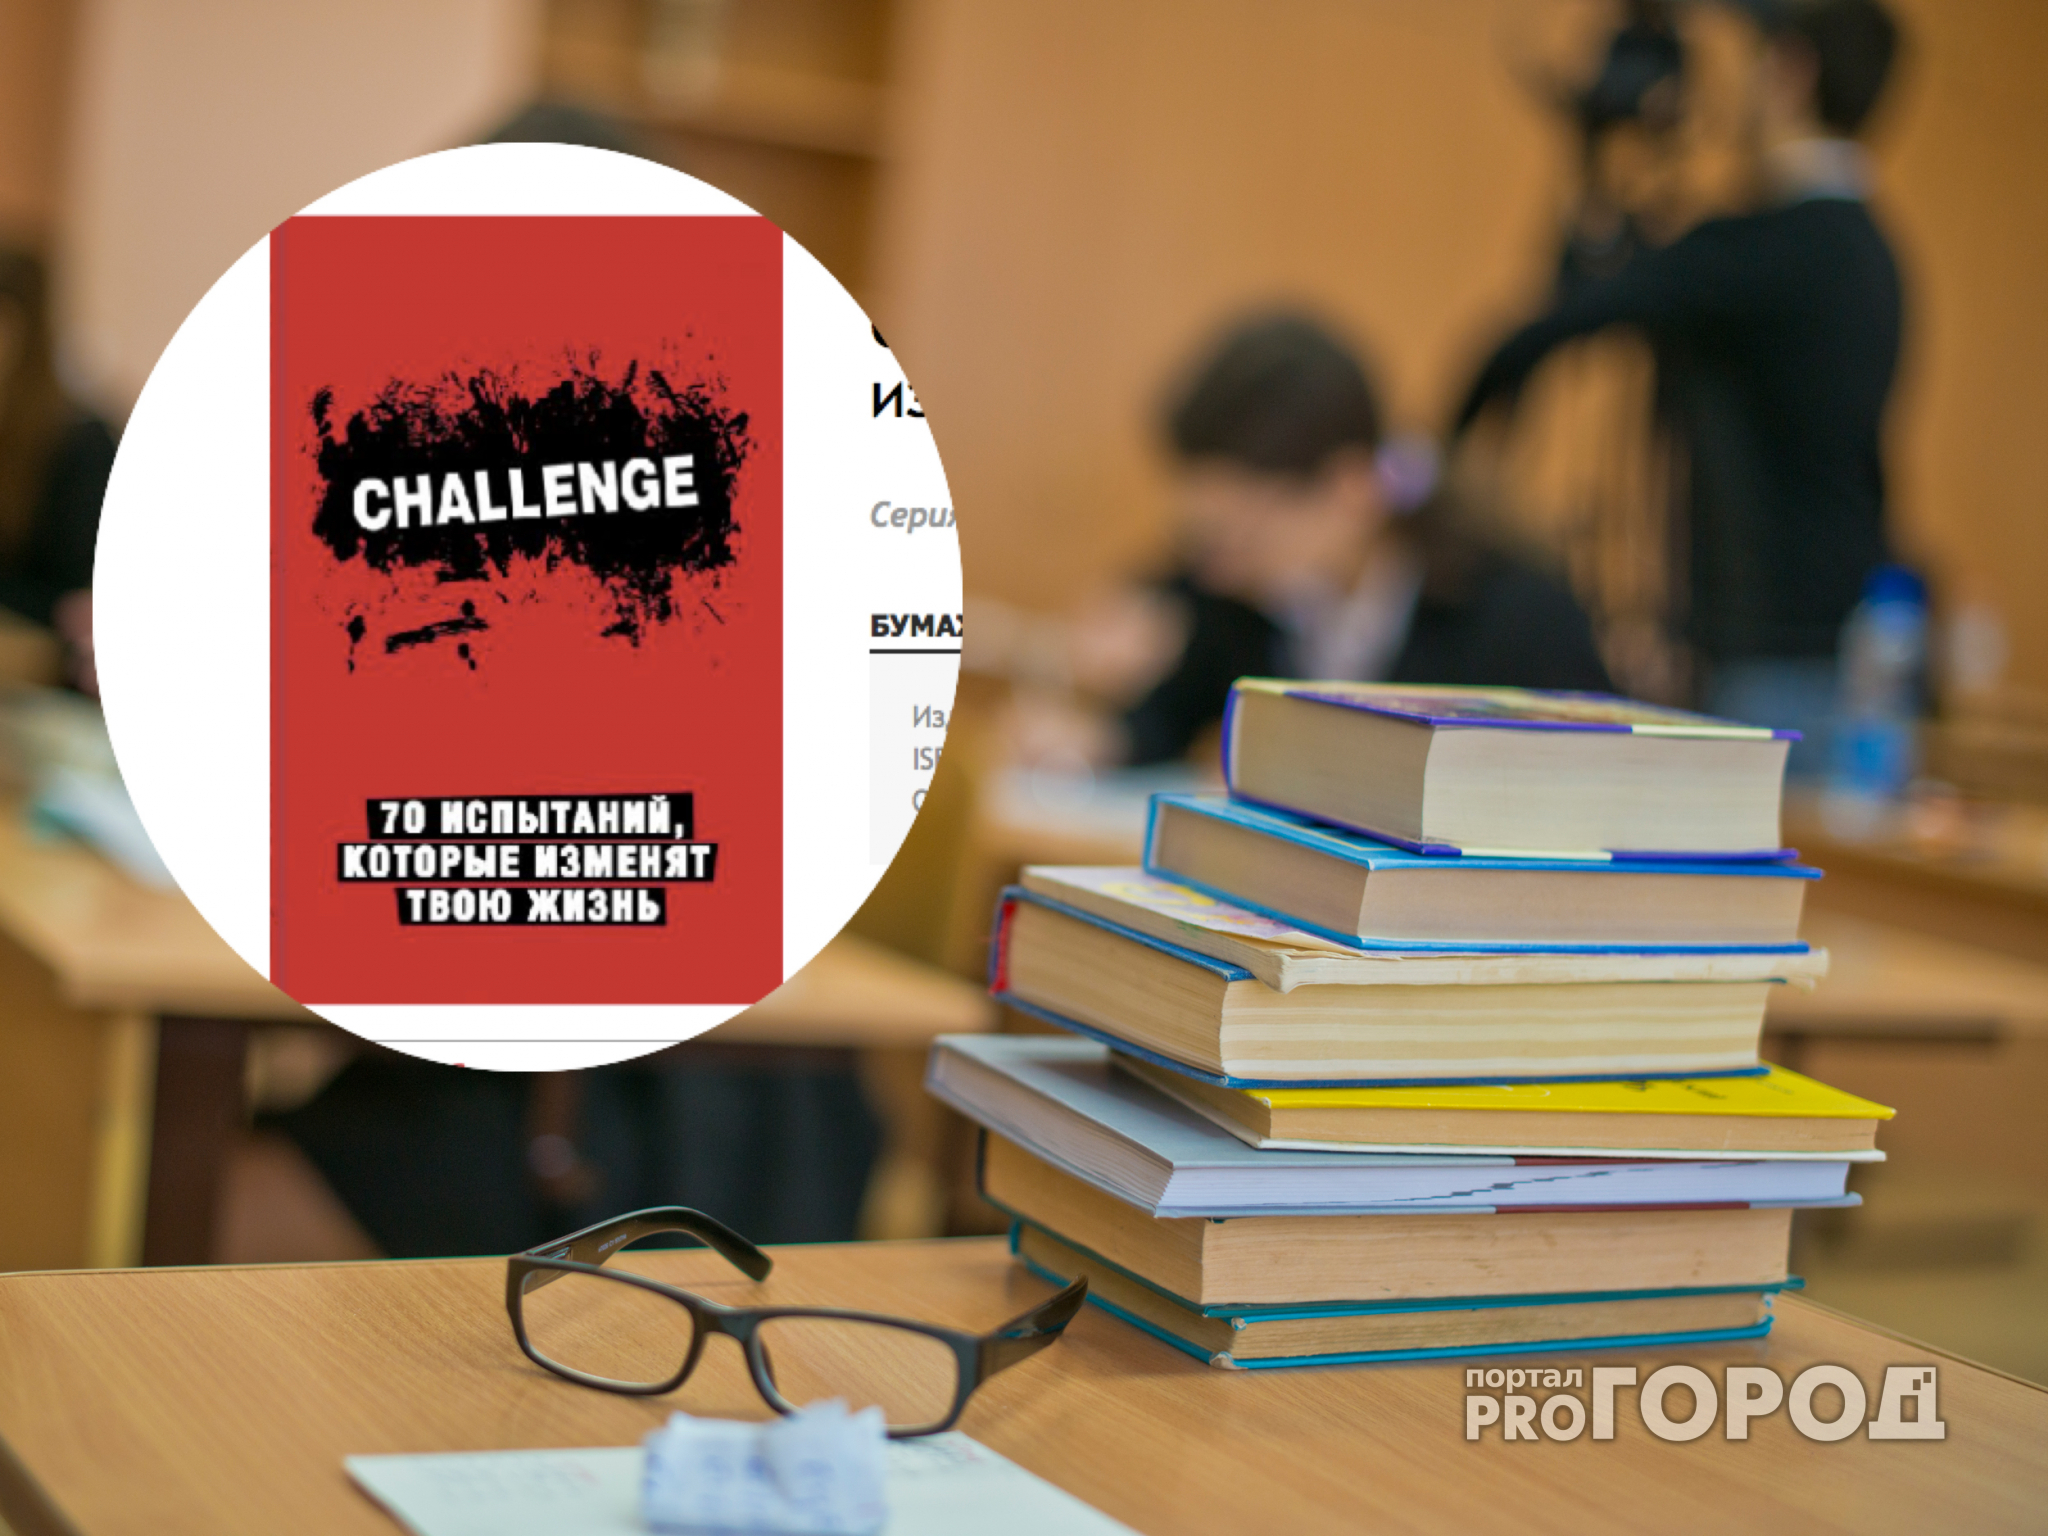 В Рязани продается книга, провоцирующая агрессию подростков, и запрещенная прокуратурой